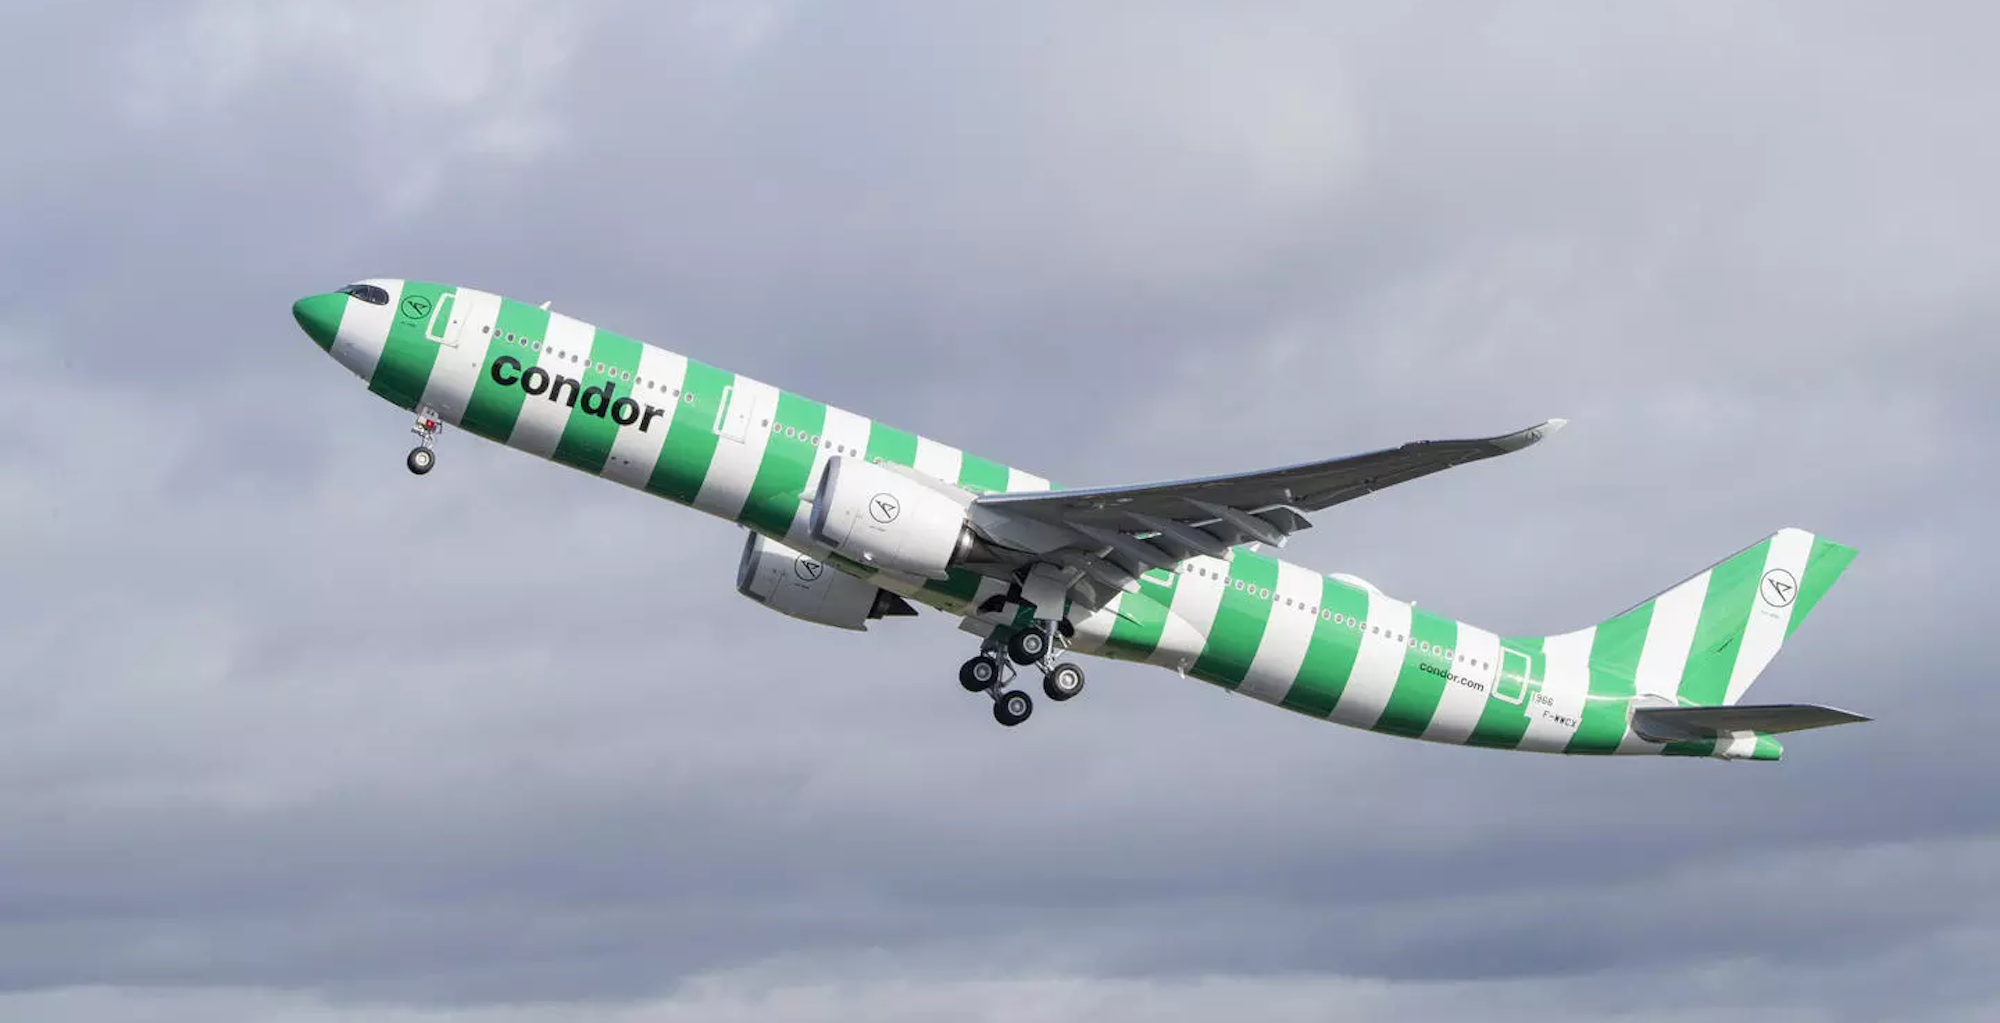 Take-off Condor A330-900